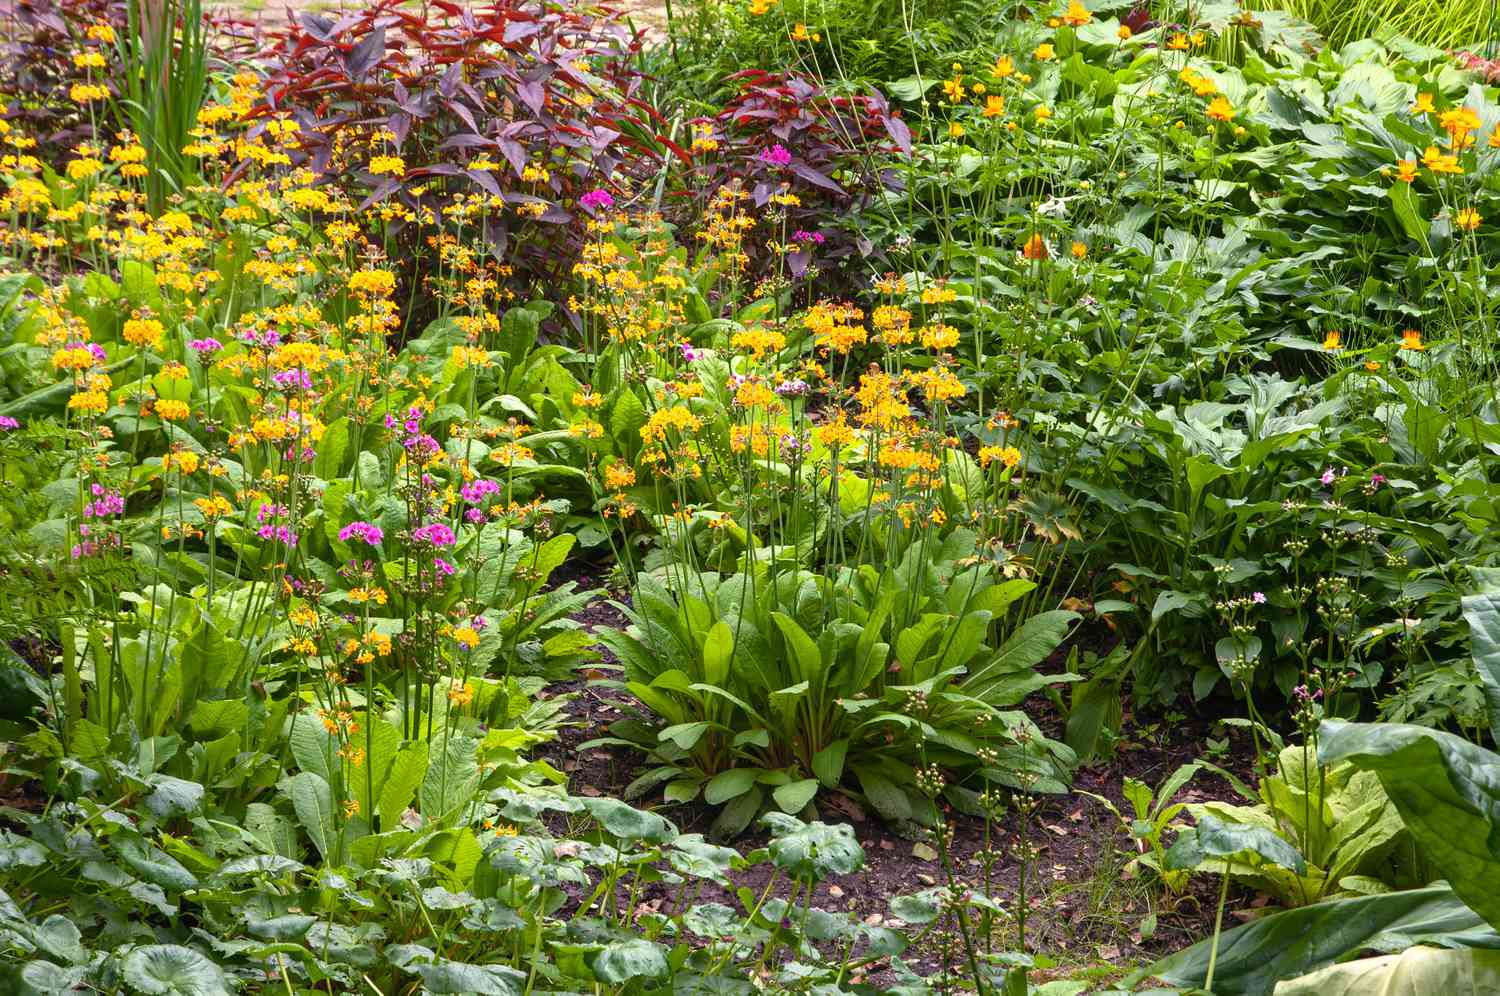 Moorgarten mit gelber Schlüsselblume und blühenden Pflanzen